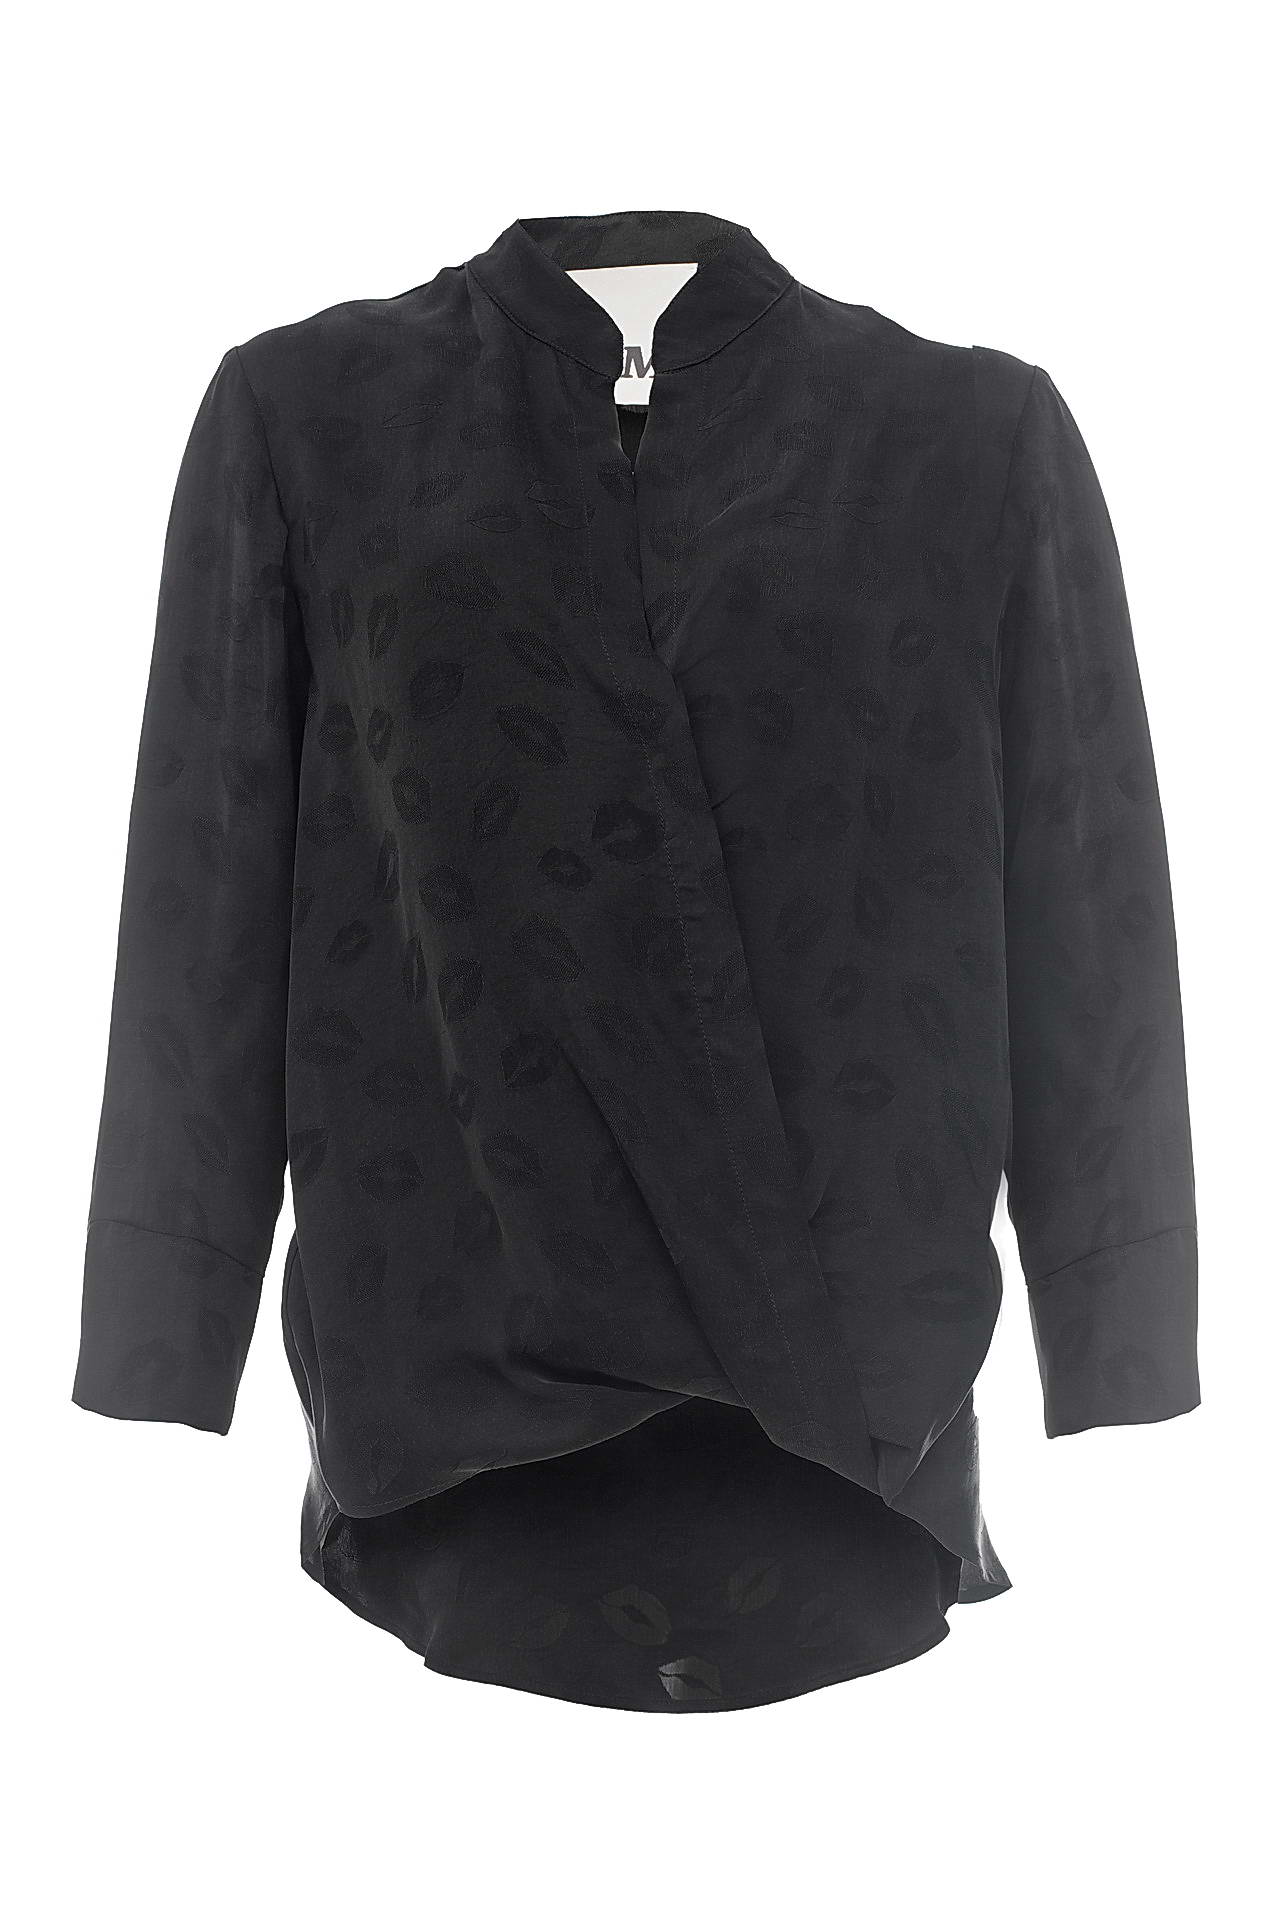 Одежда женская Блузка 8PM (8PM62C117/17.1). Купить за 8450 руб.